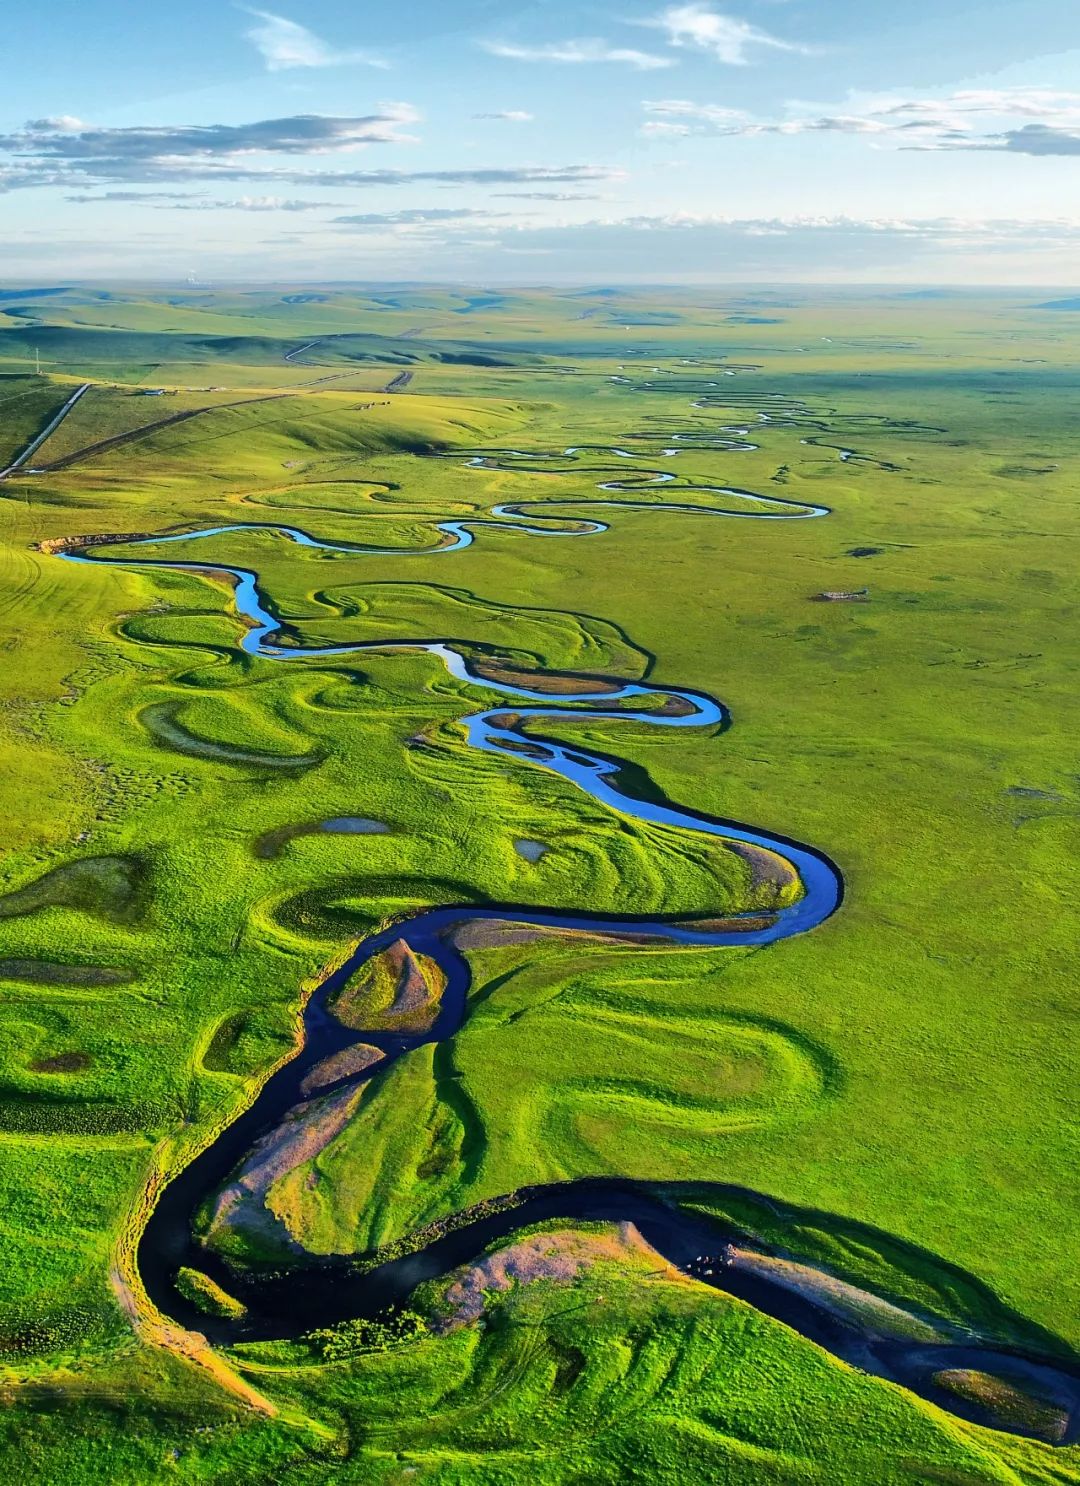 内蒙古呼伦贝尔莫日格勒河（莫日根河）绿色牧场风景，摄影师@刘兆明/星球研究所